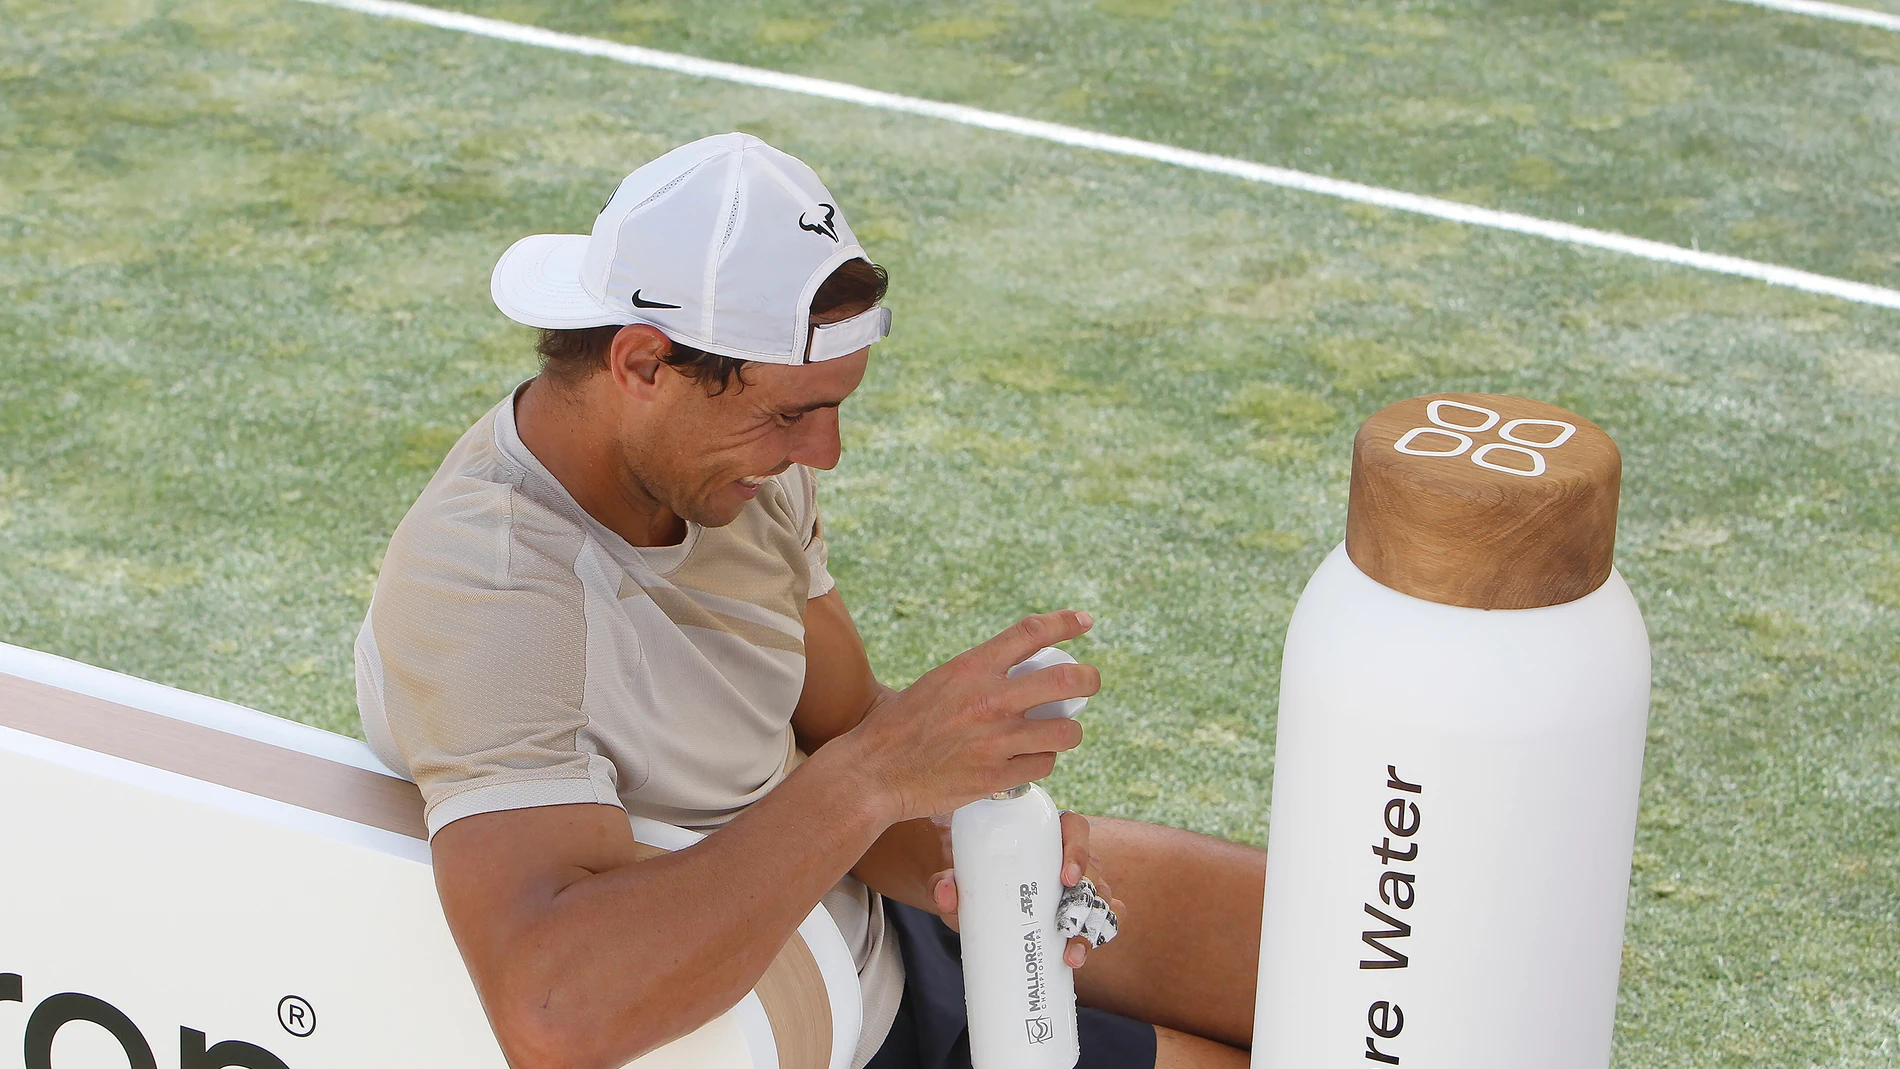 El tenista Rafael Nadal bebe agua durante un entrenamiento abierto a la prensa, en el Mallorca Country Club. Ep